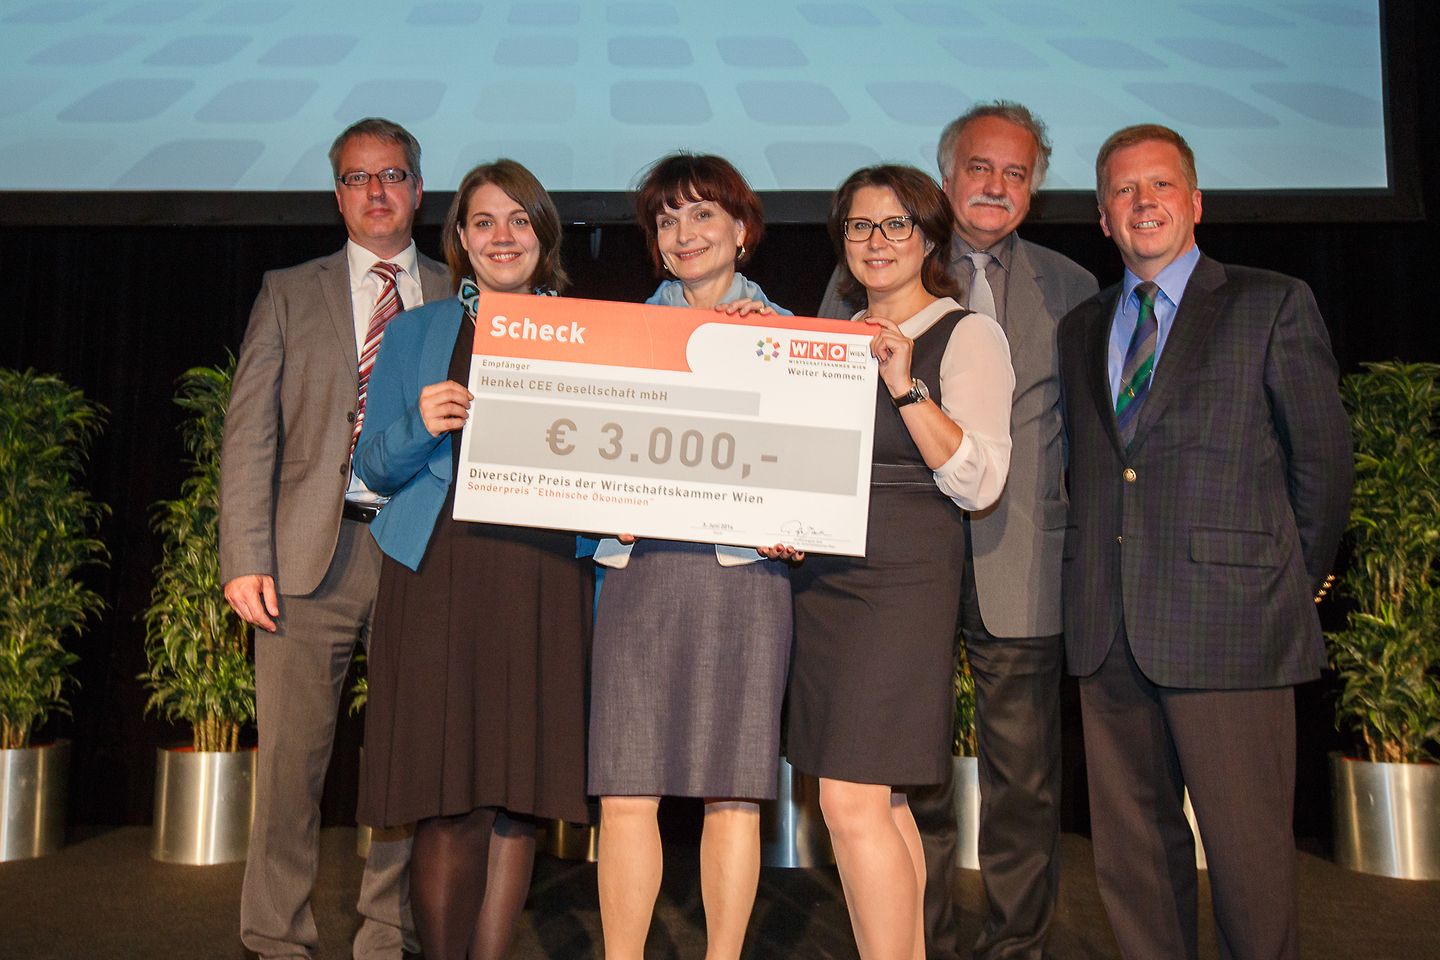 Henkel CEE wins "DiversCity" Prize 2014